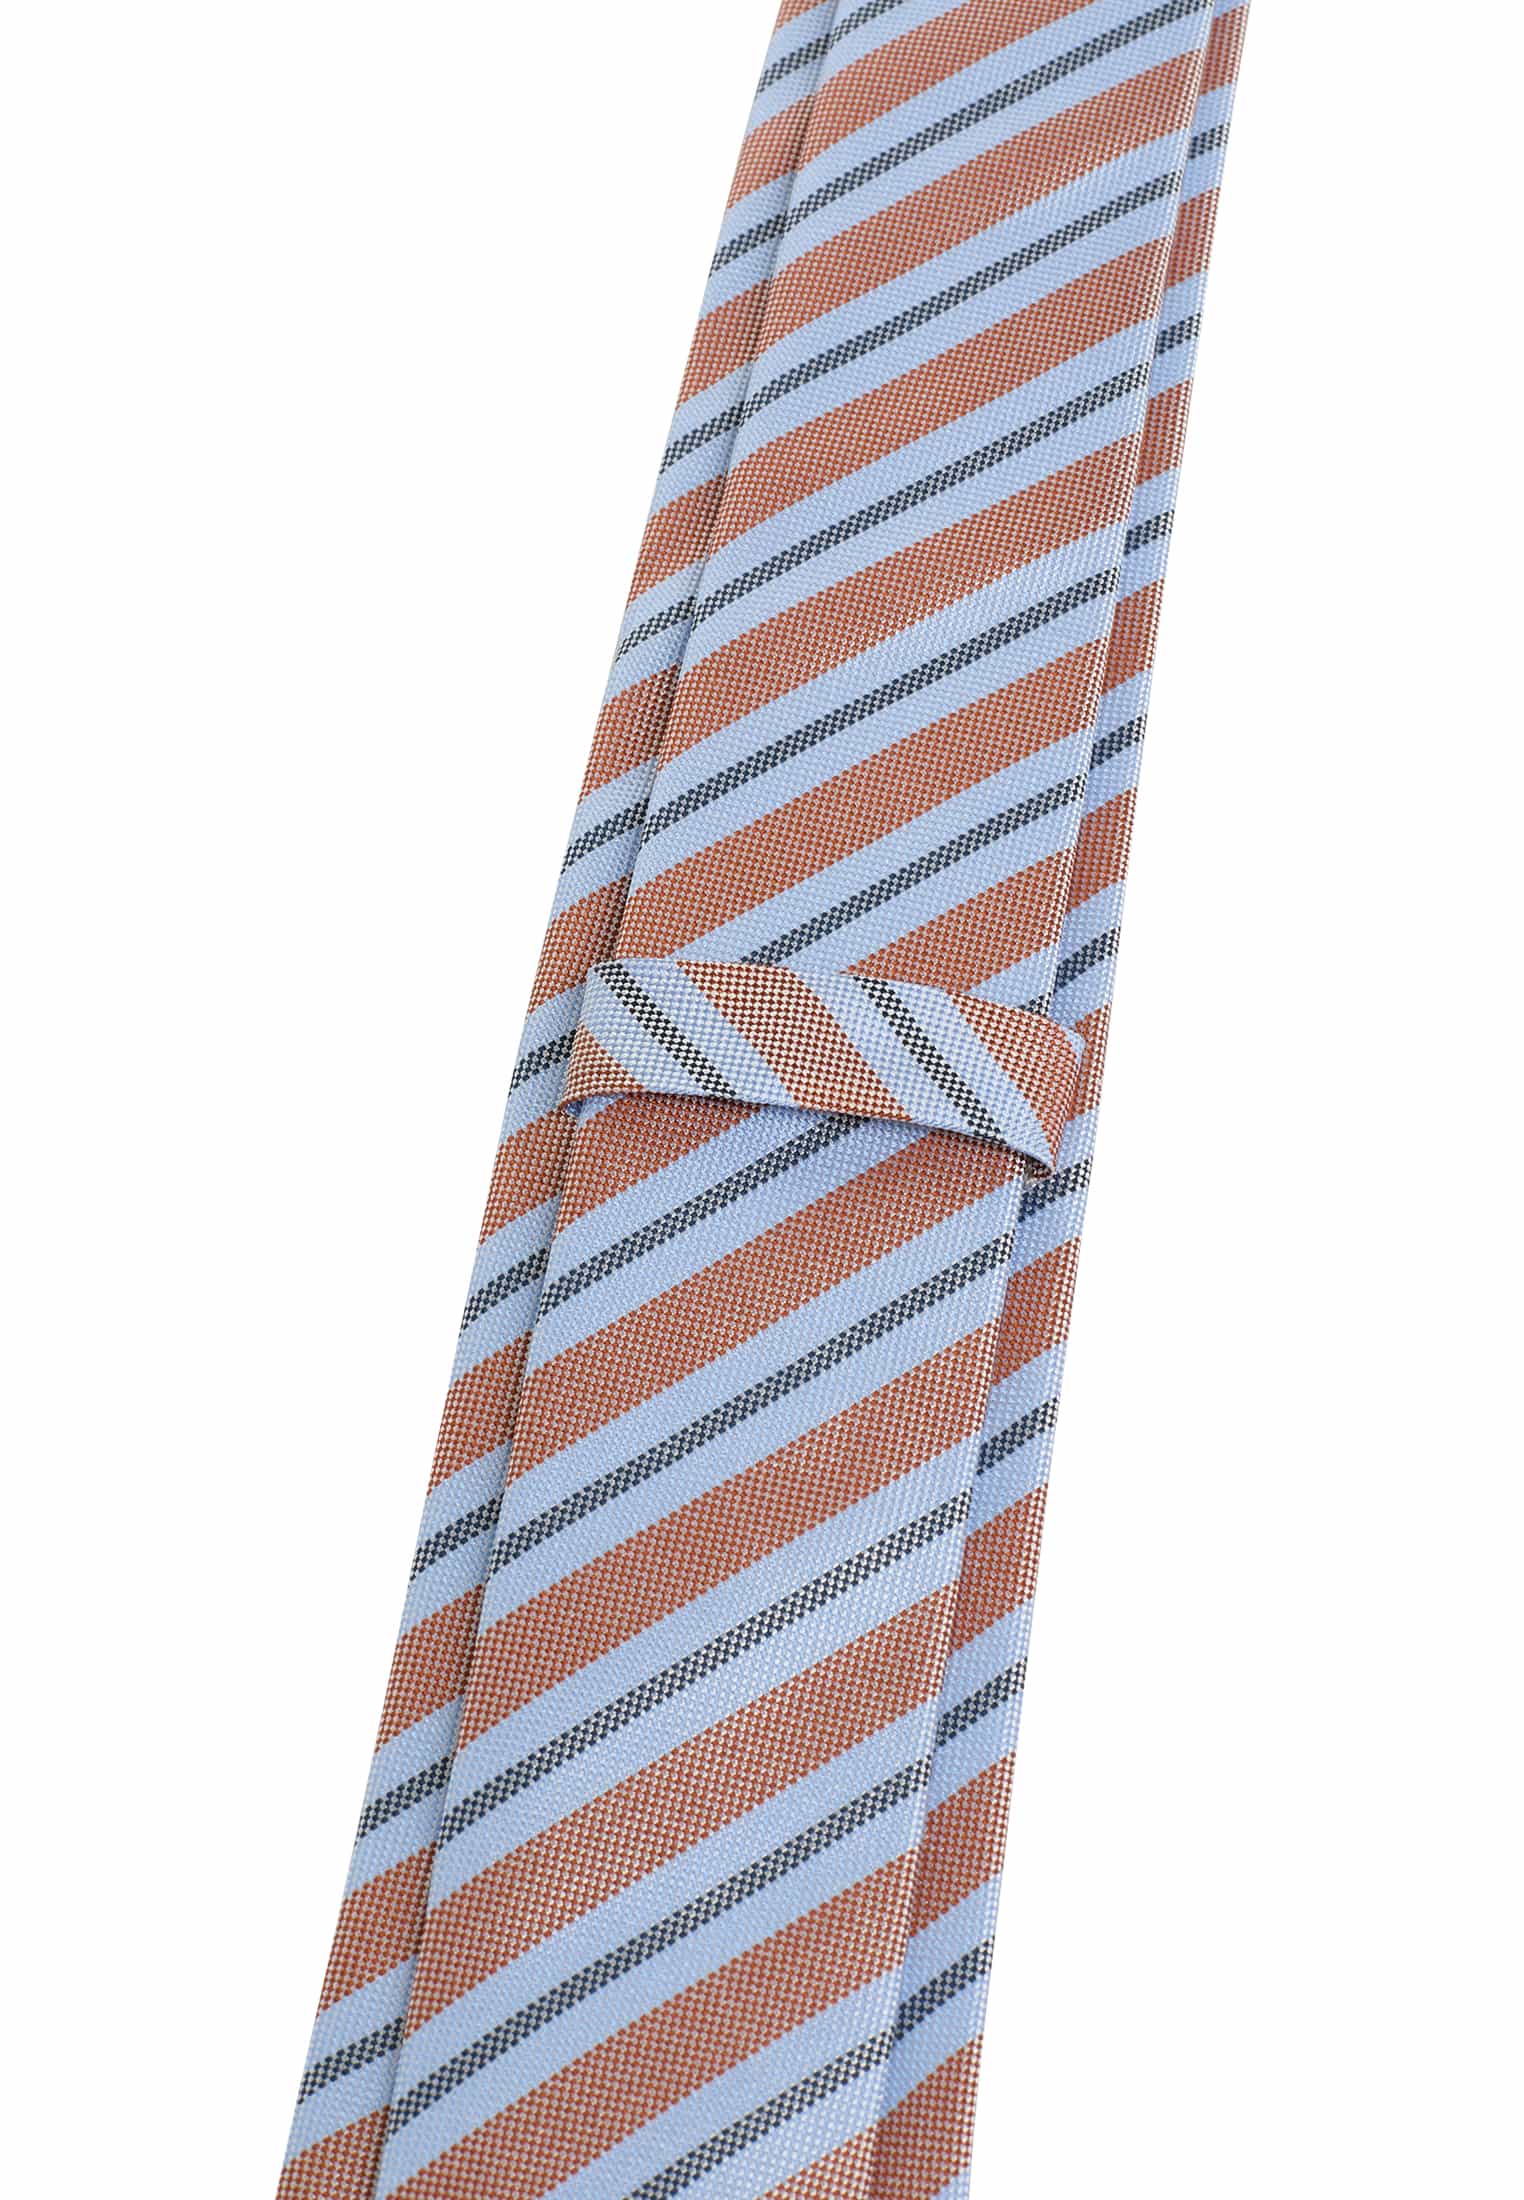 Krawatte in hellblau/orange gestreift | hellblau/orange | 142 |  1AC02000-81-33-142